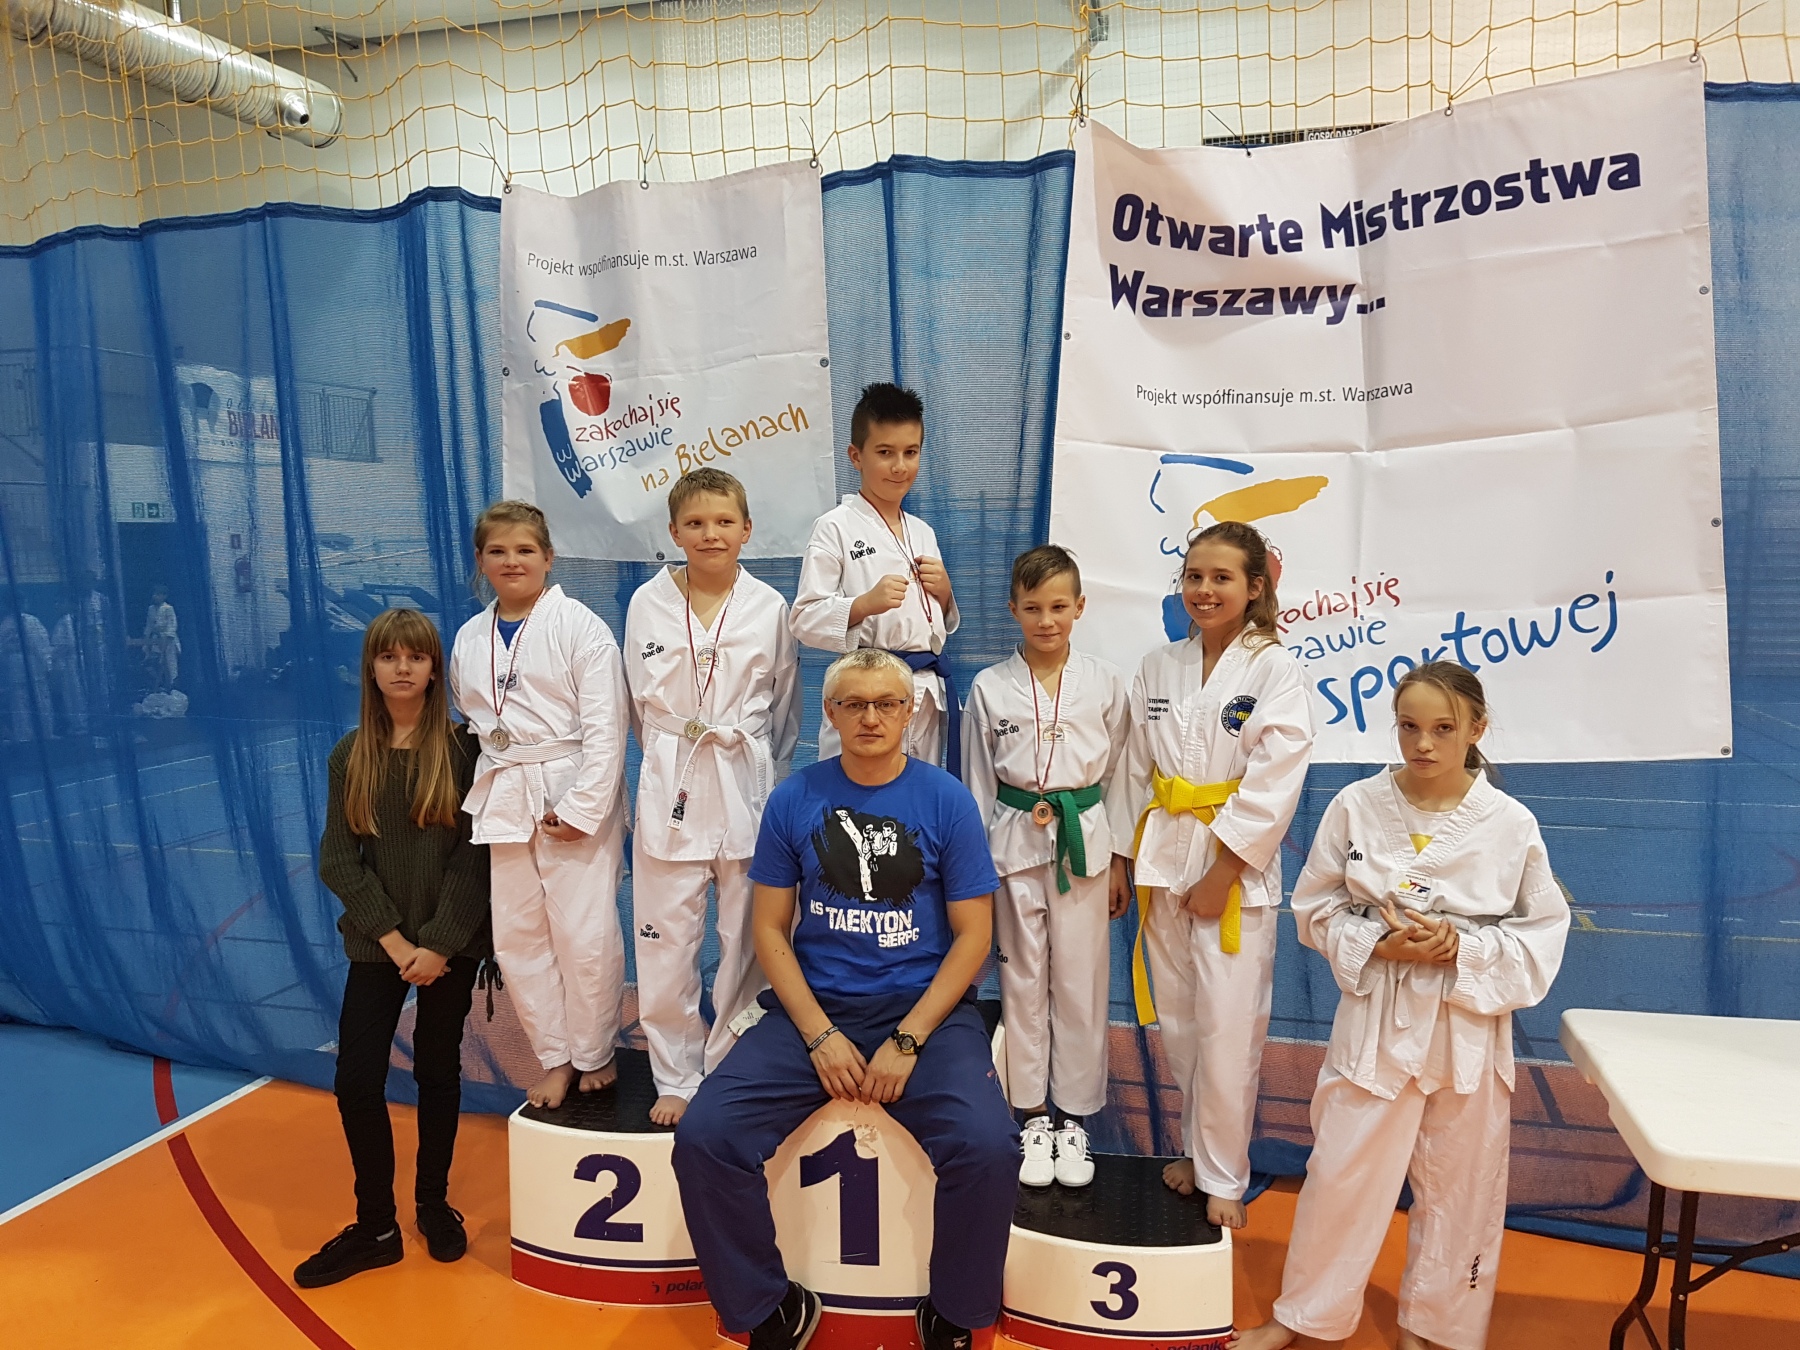 Otwarte Mistrzostwa Warszawy w Taekwondo Olimpijskim, 25.11.2017 r.